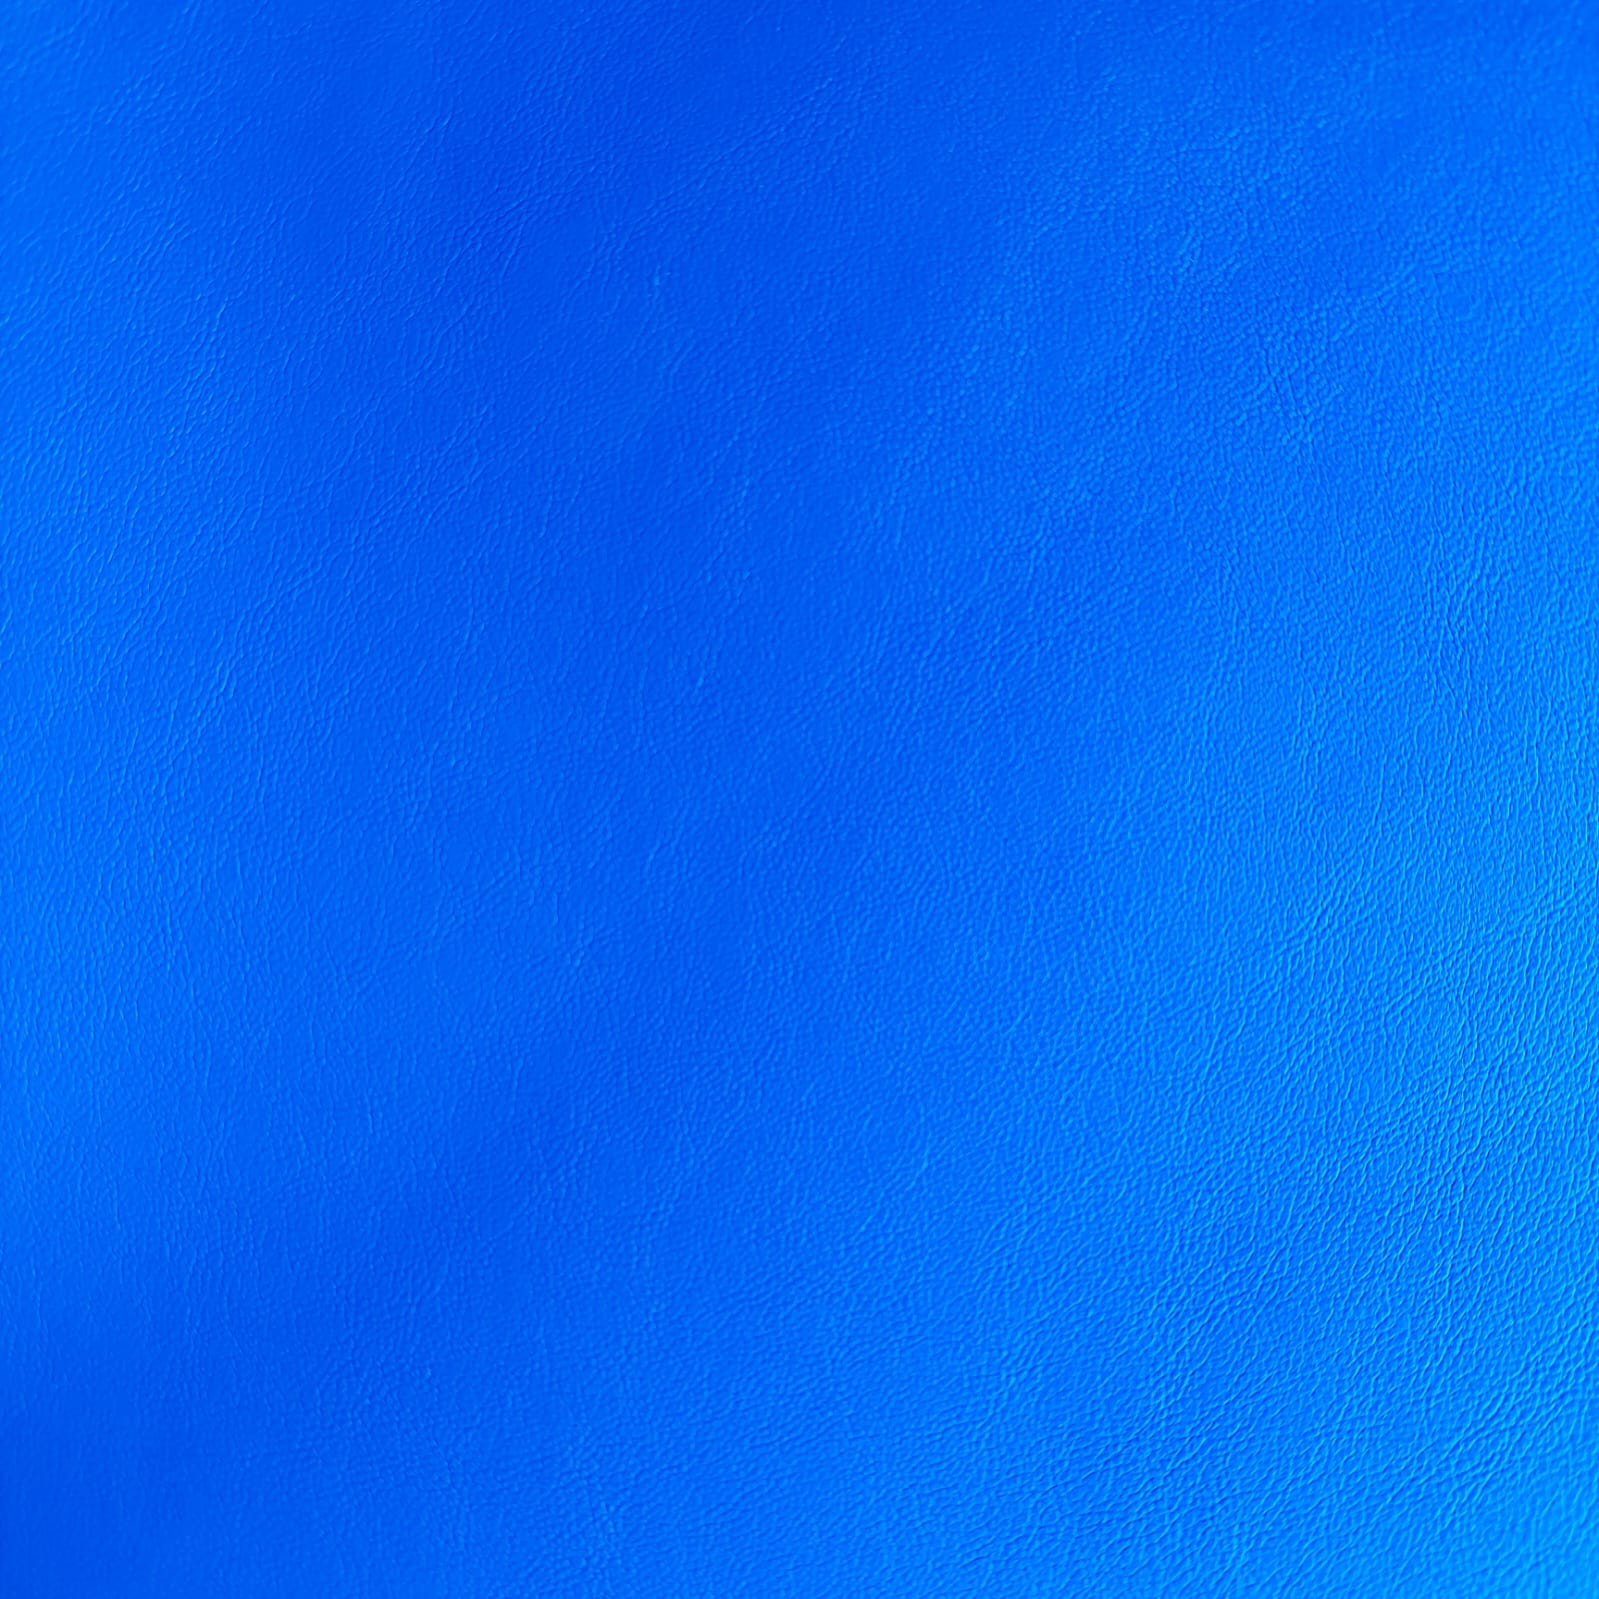 Marilinhas Tecidos - Neo couro - corino - cor azul royal - Korino